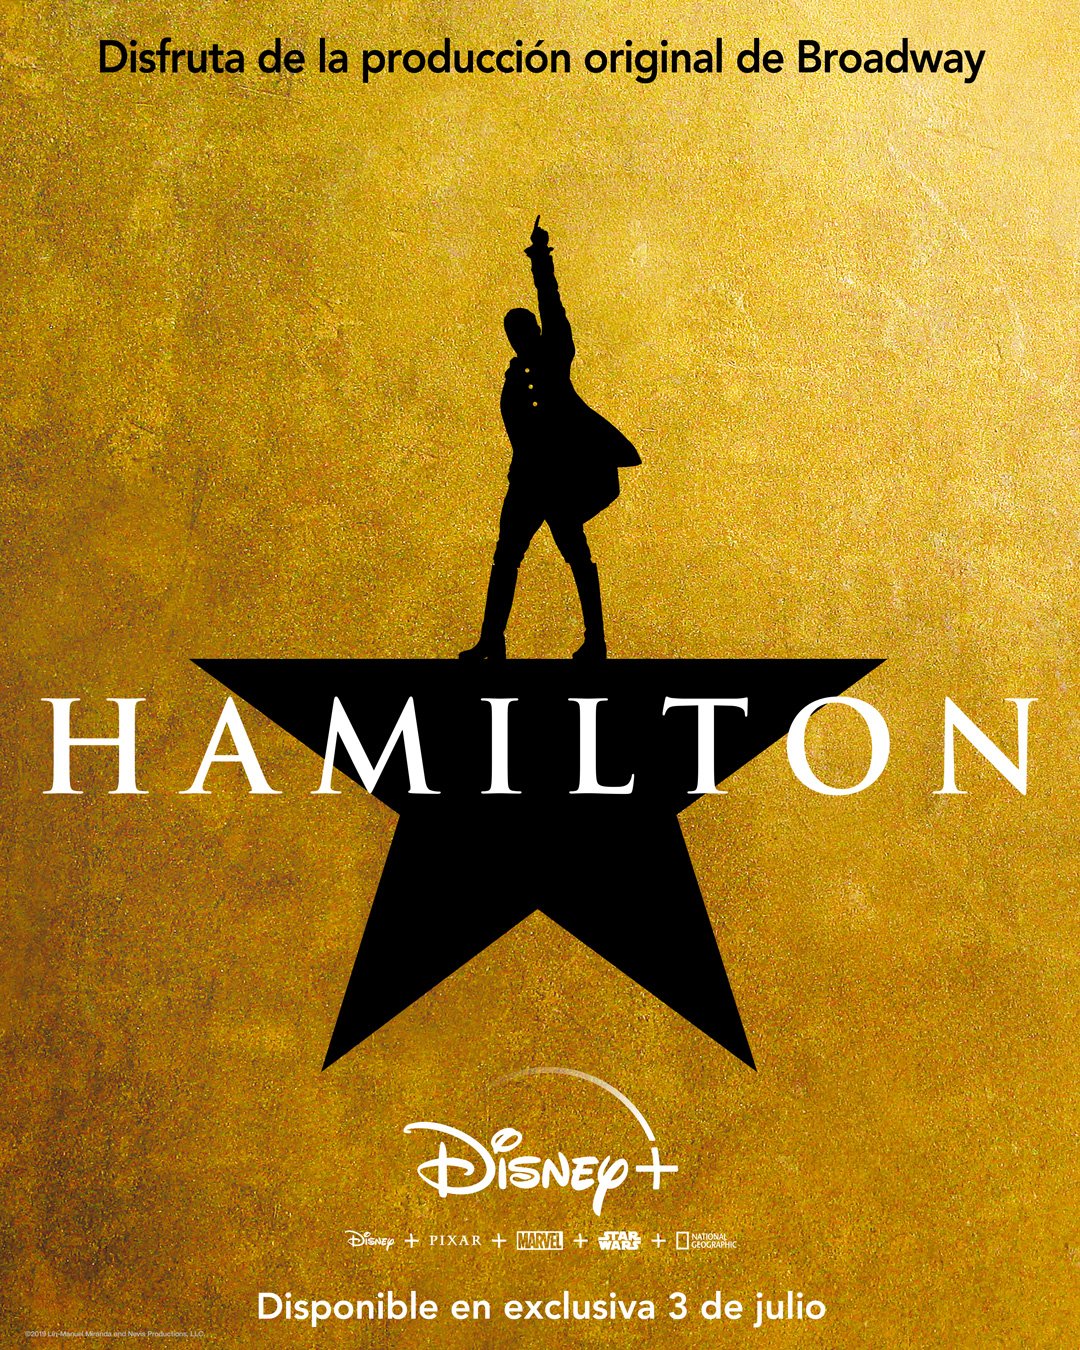 Hamilton", el musical de Broadway se estrena en Disney+ - No Es ...